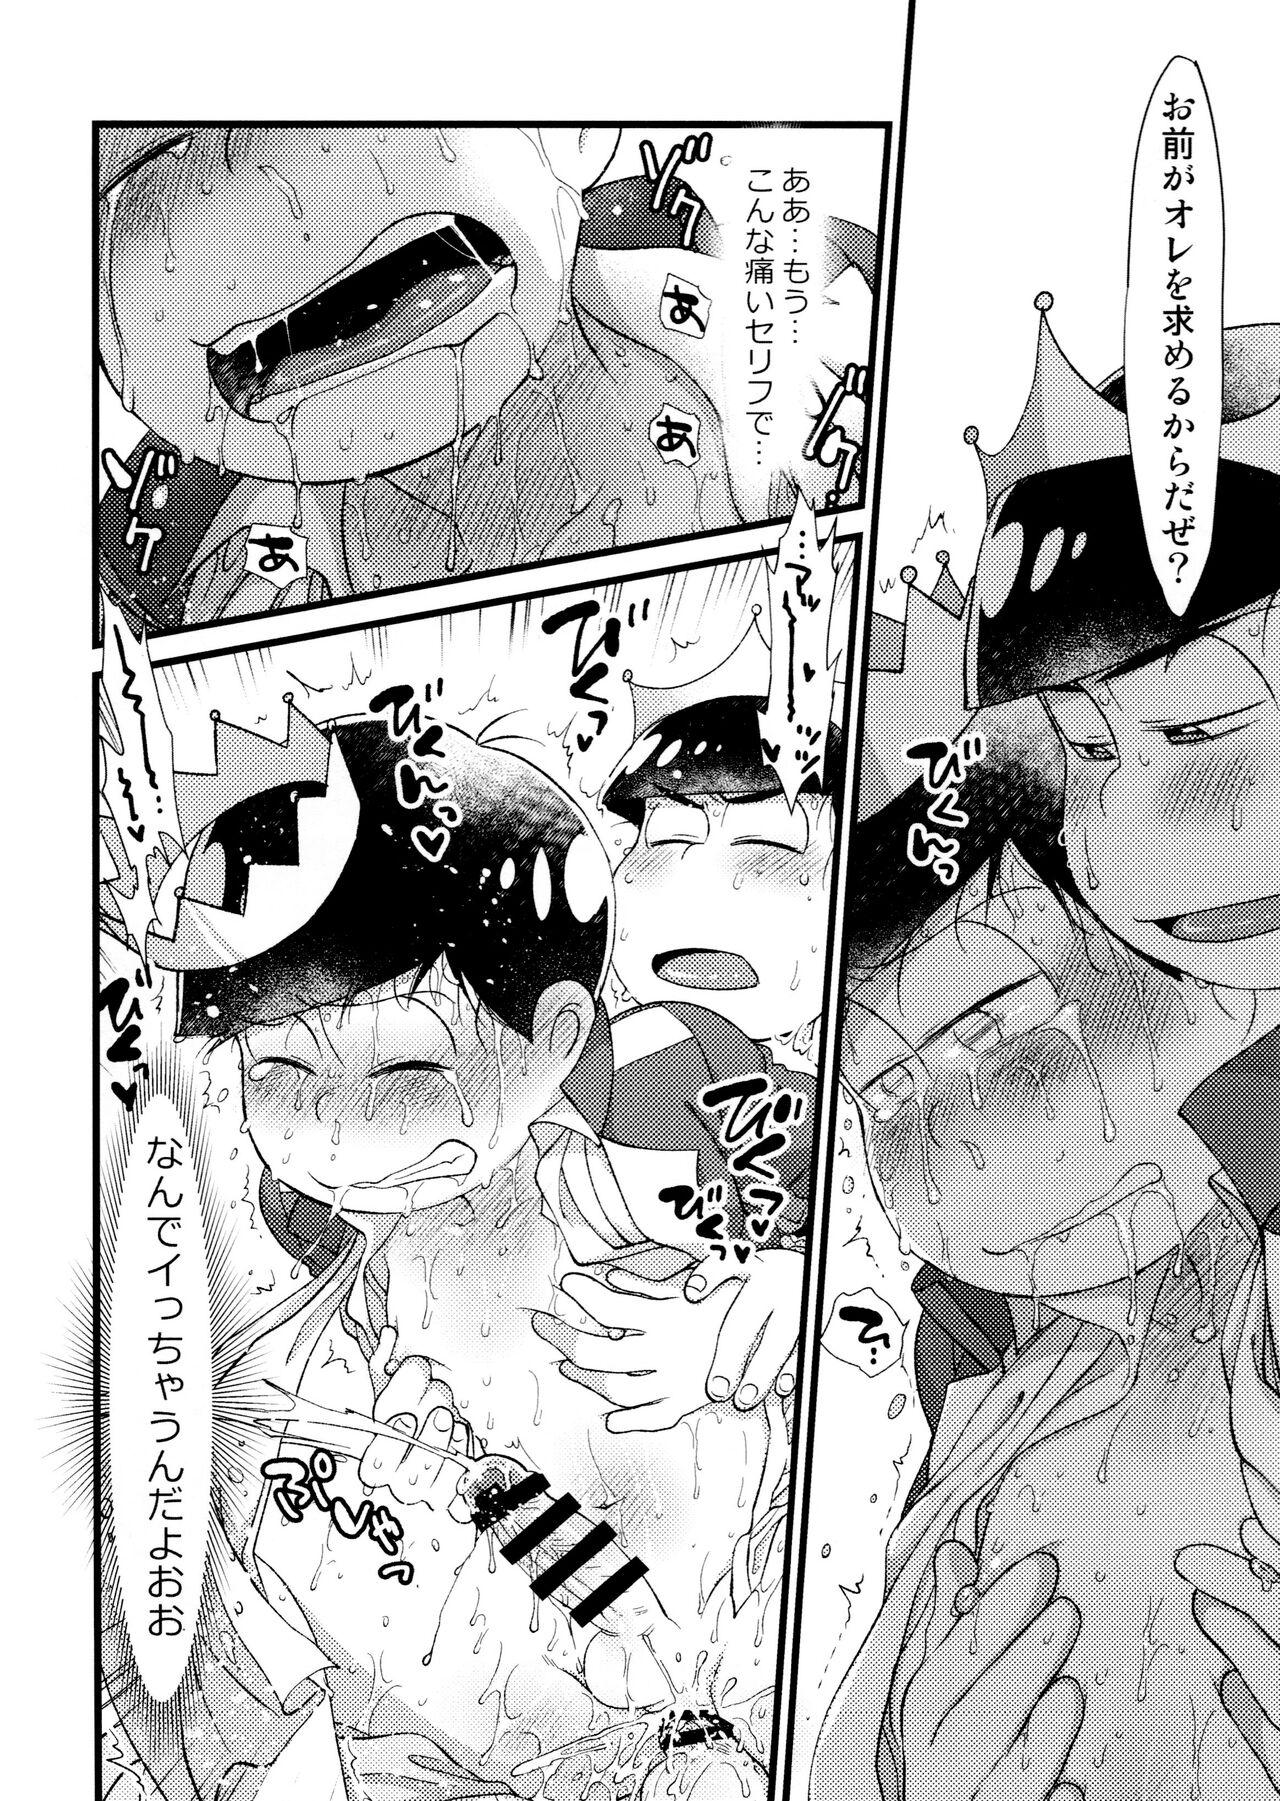 3some Anata to zutto asa kara asamade - Osomatsu san Dominate - Page 7